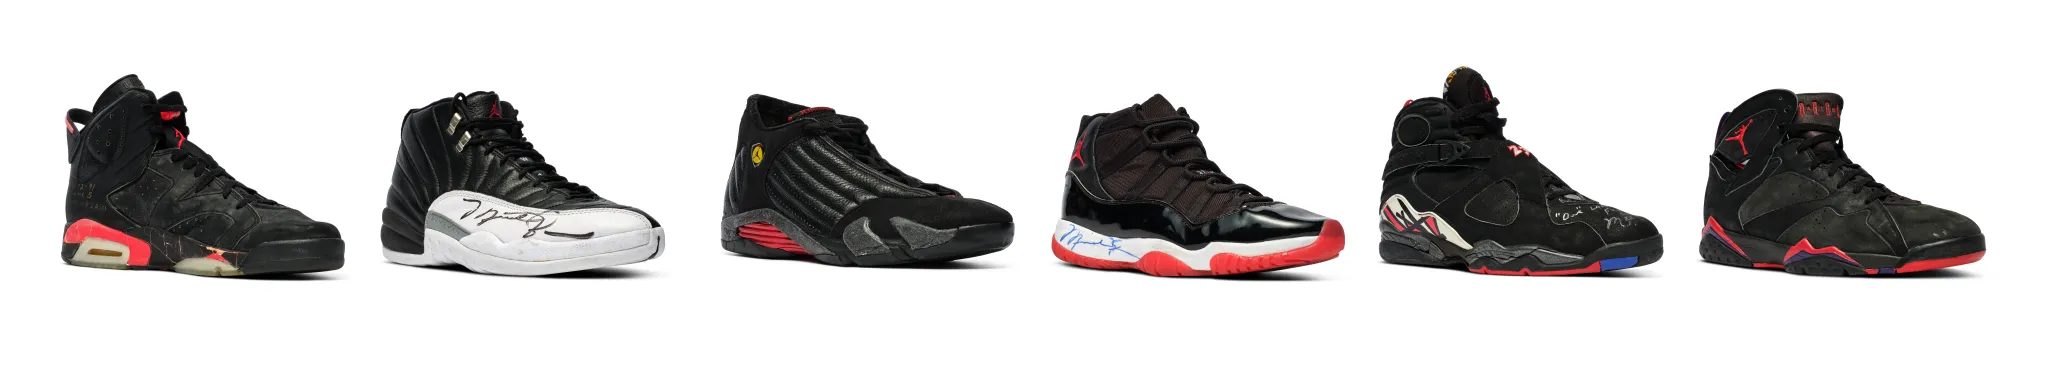 la-coleccion-de-zapatillas-de-Michael-Jordan-que-se-vendio-por-8-millones-de-dolares